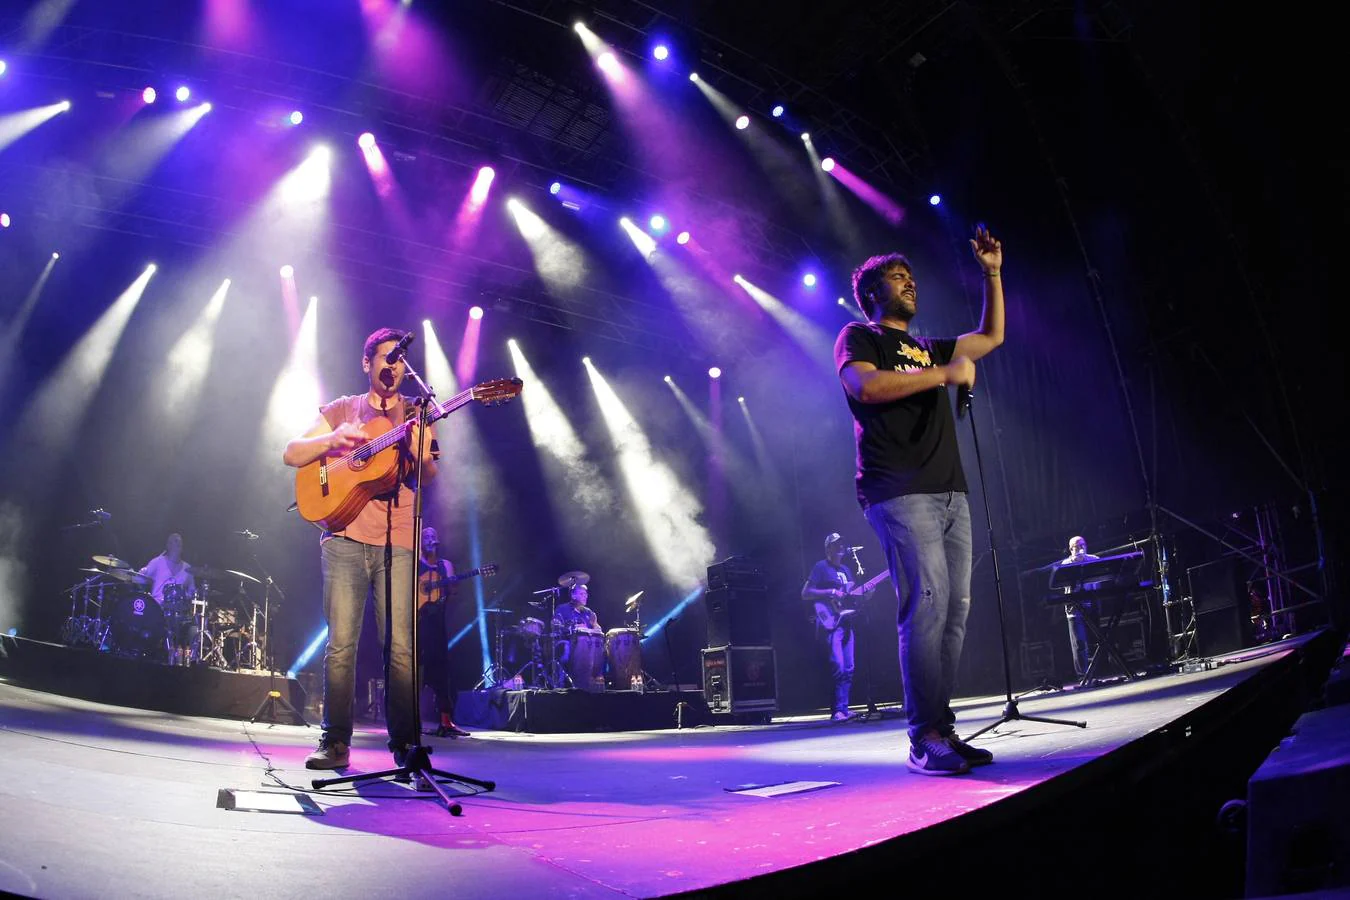 La cuarta jornada del festival Música en Grande 2018, que se celebró ayer en los Campos de El Malecón de Torrelavega, estuvo marcada por los ritmos y las canciones de dos grupos de referencia dentro del pop rock en la escena musical española, con los conciertos de Estopa y Bebe.